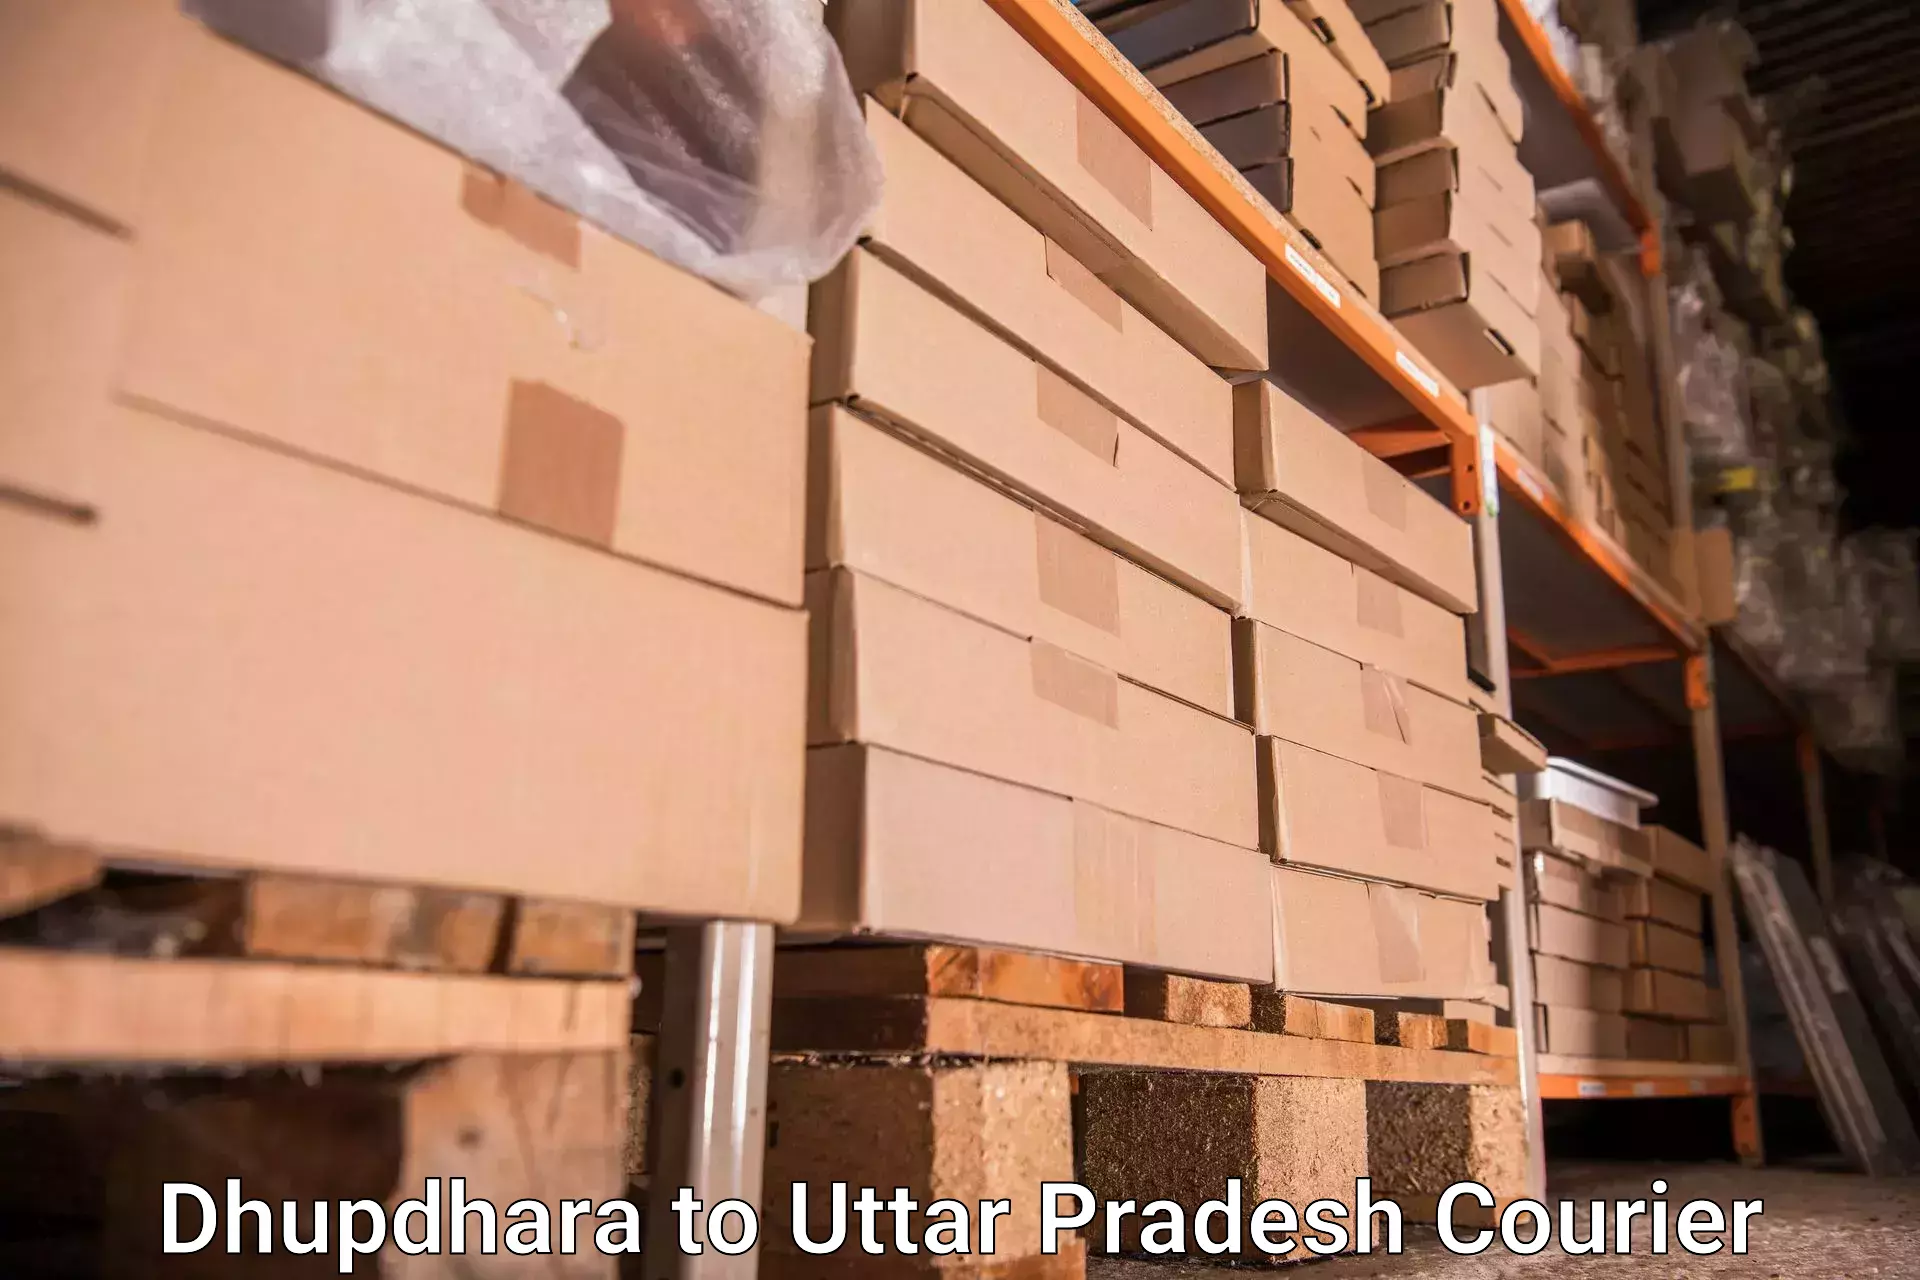 Luggage transport service Dhupdhara to Vrindavan